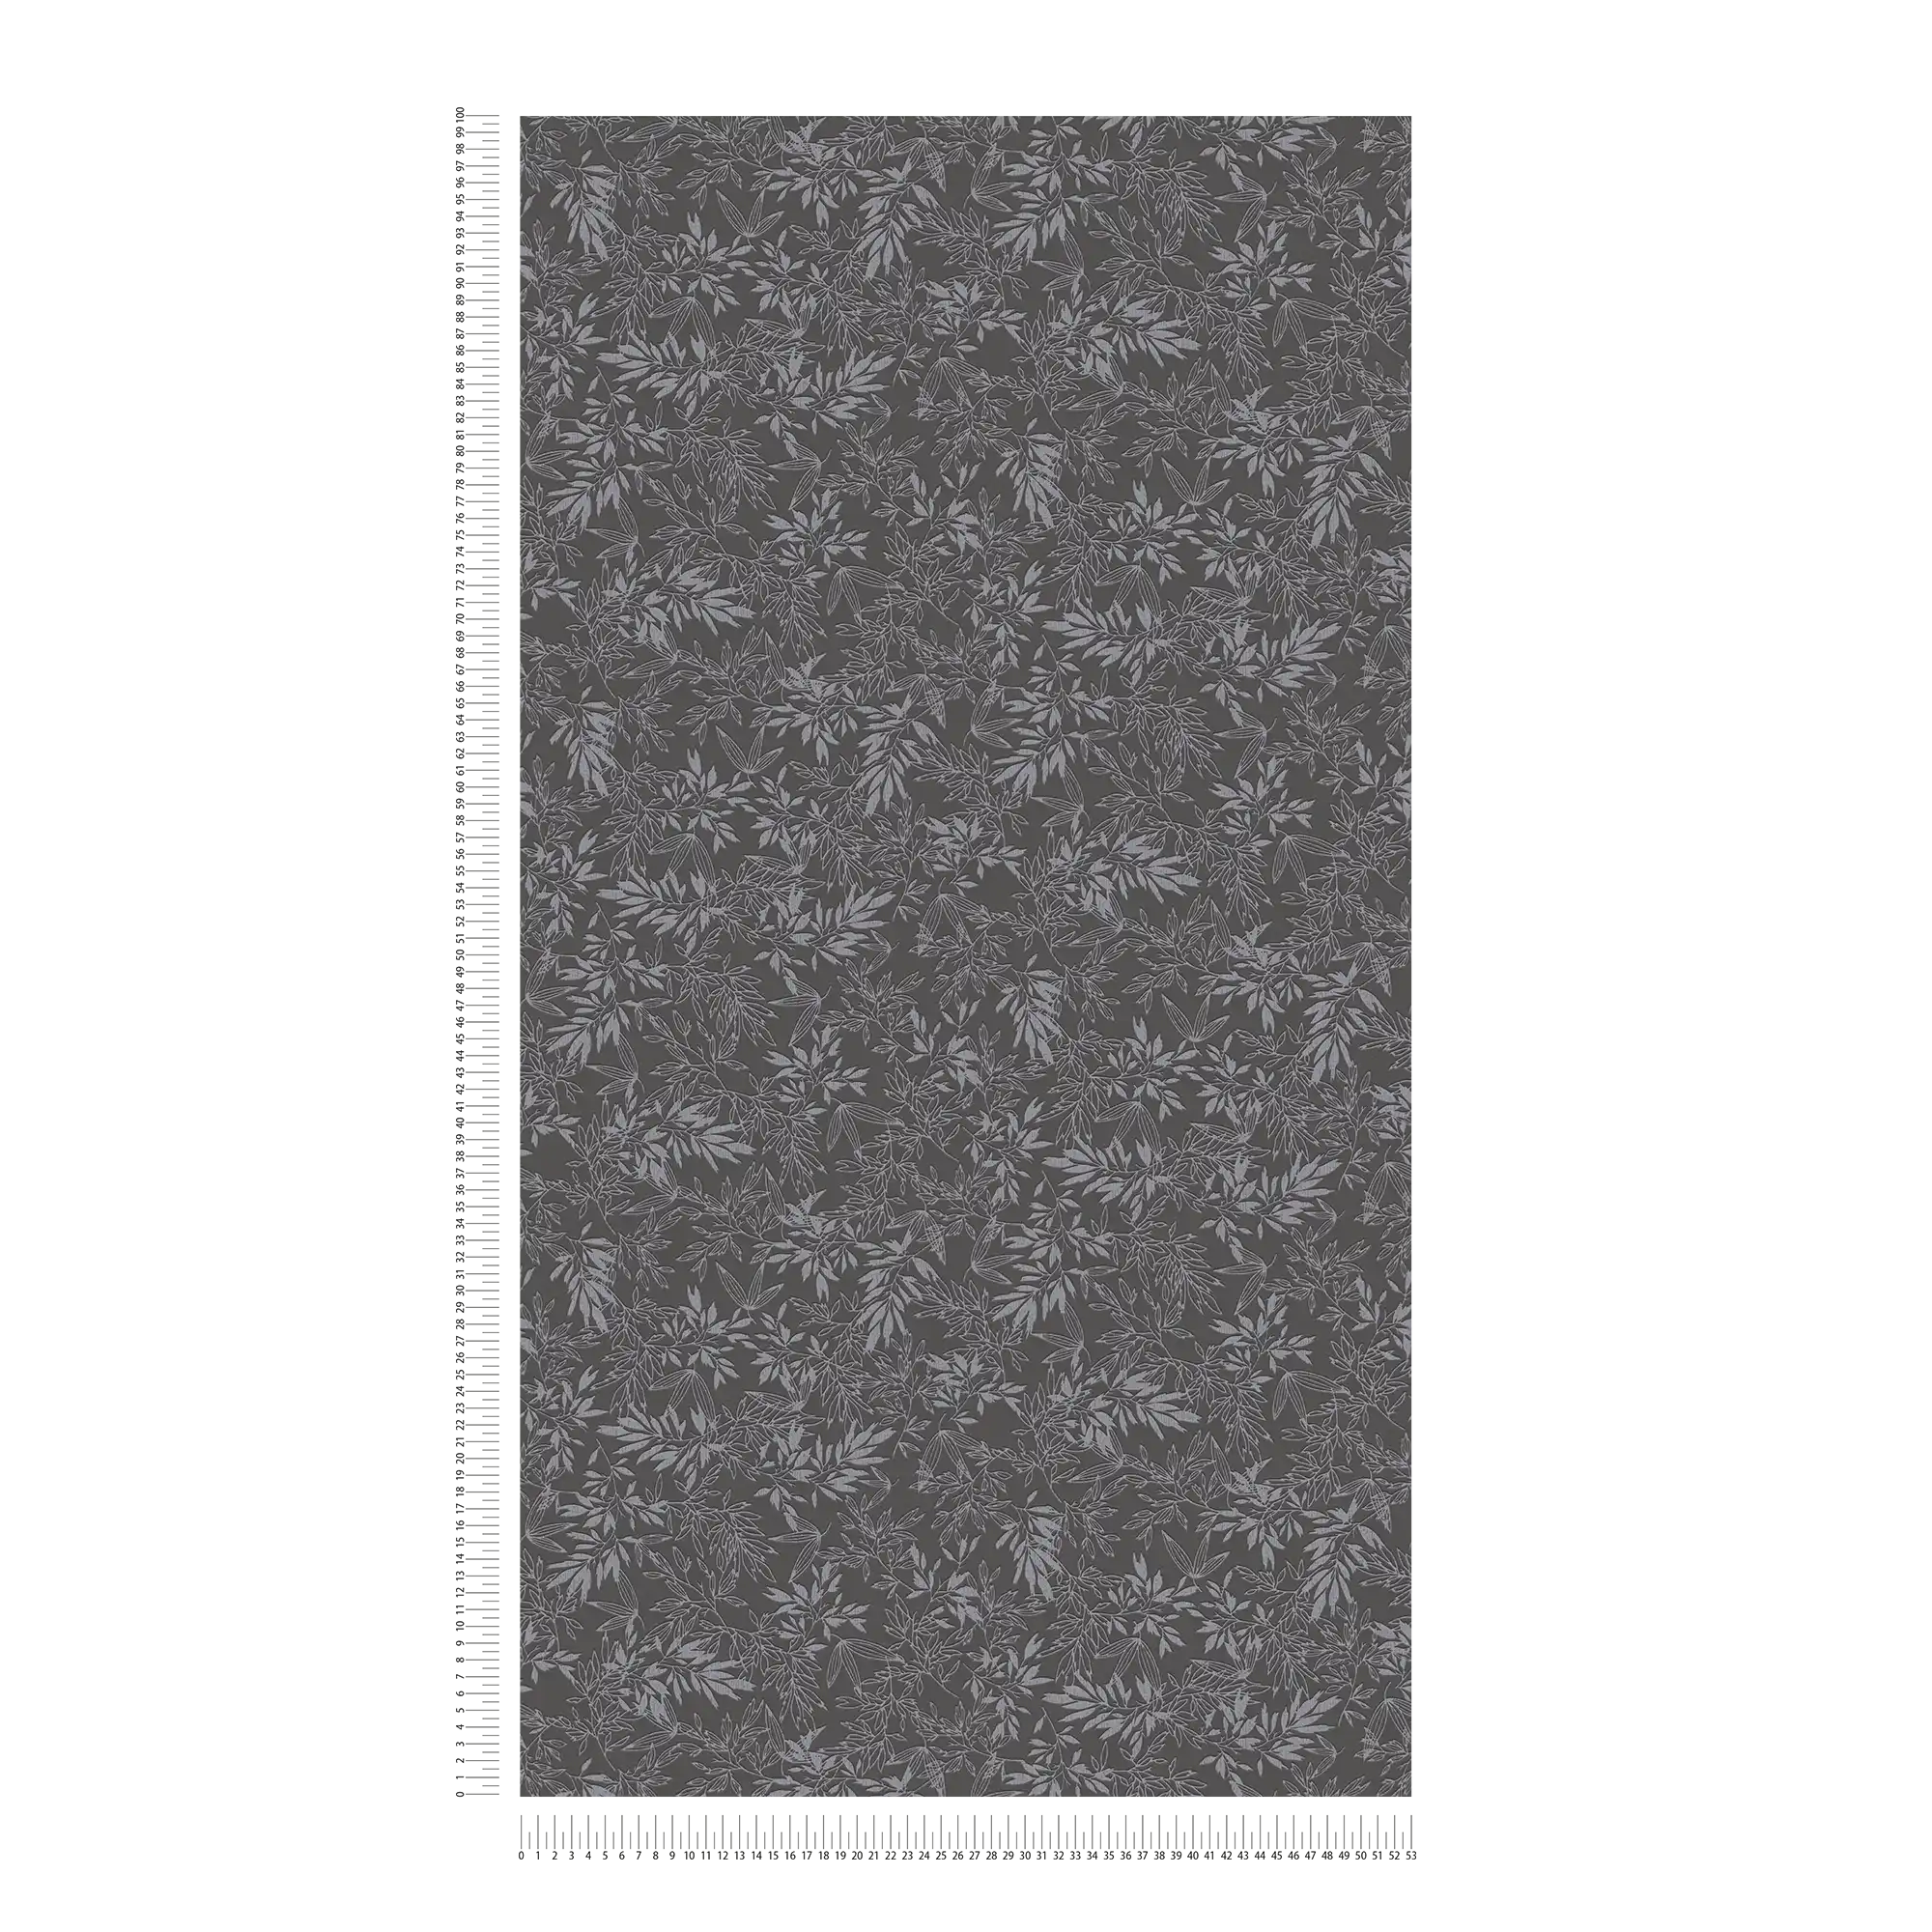             Papier peint à motif de feuilles avec structure en mousse - noir, gris
        